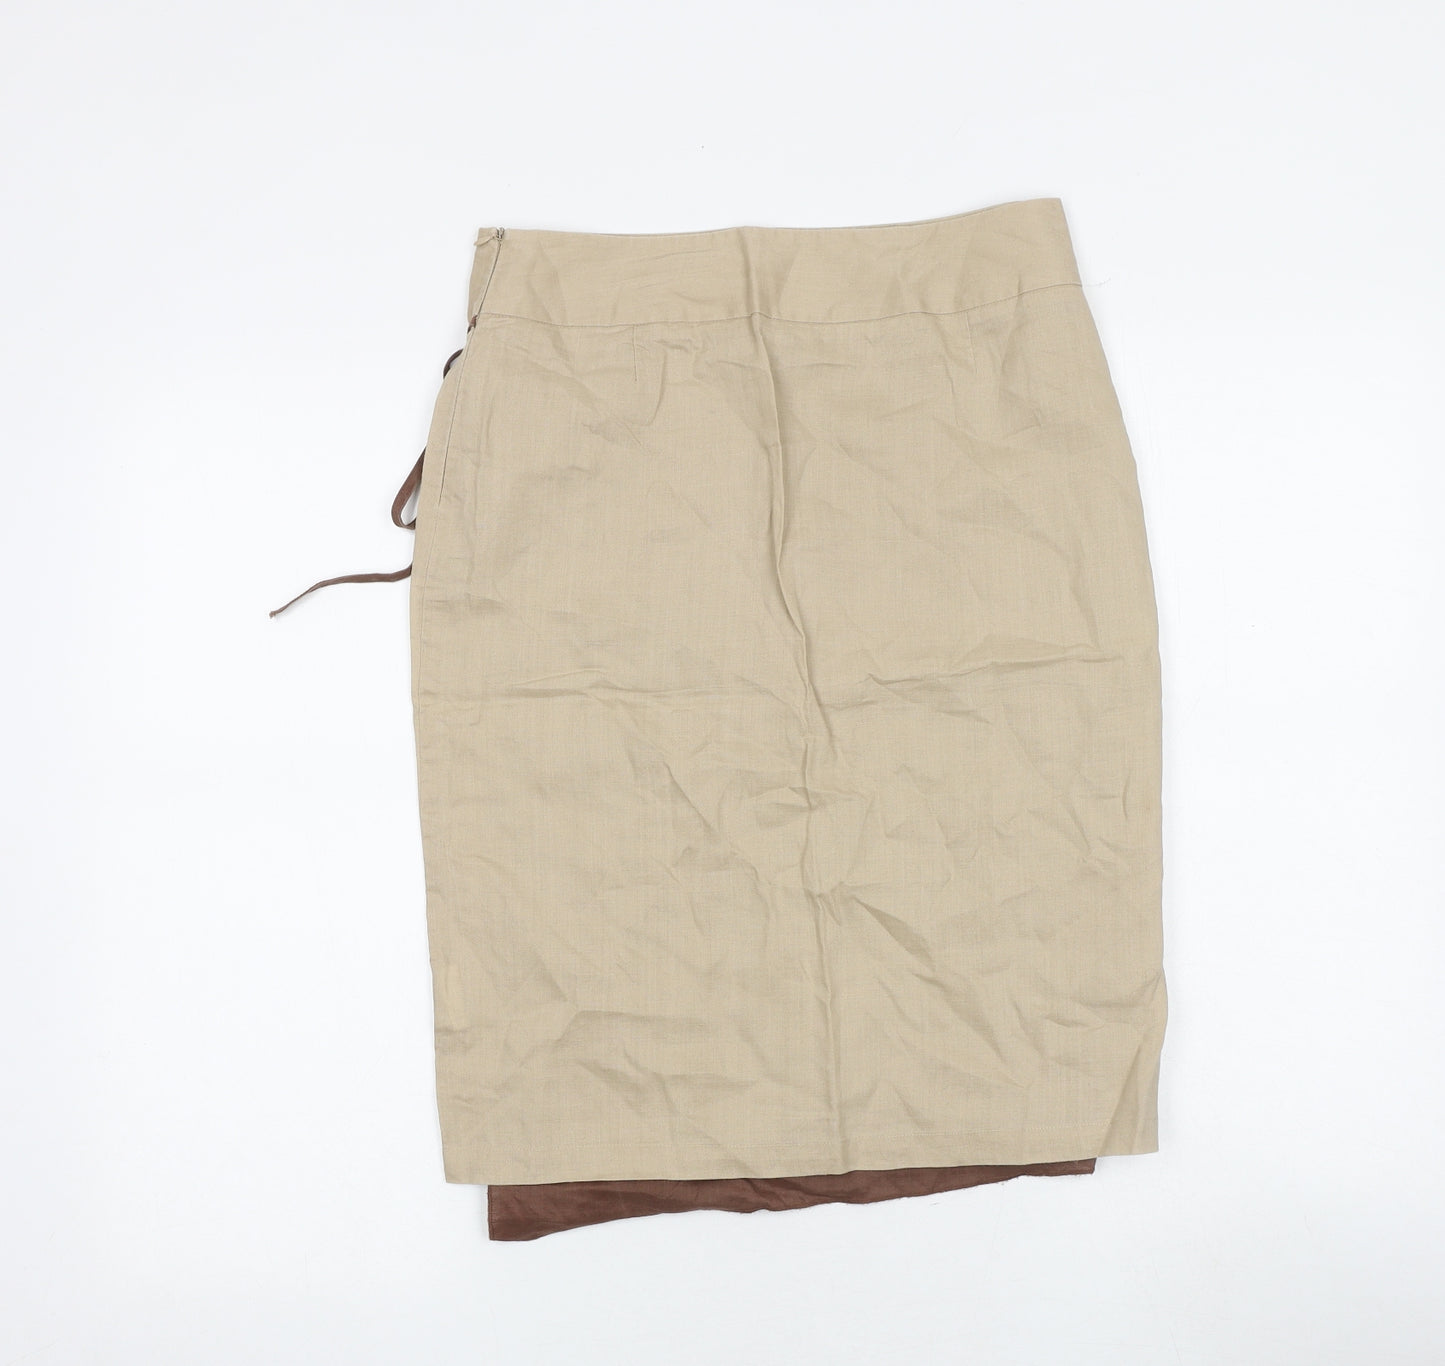 NAF NAF Womens Brown Floral Polyester A-Line Skirt Size 10 Zip